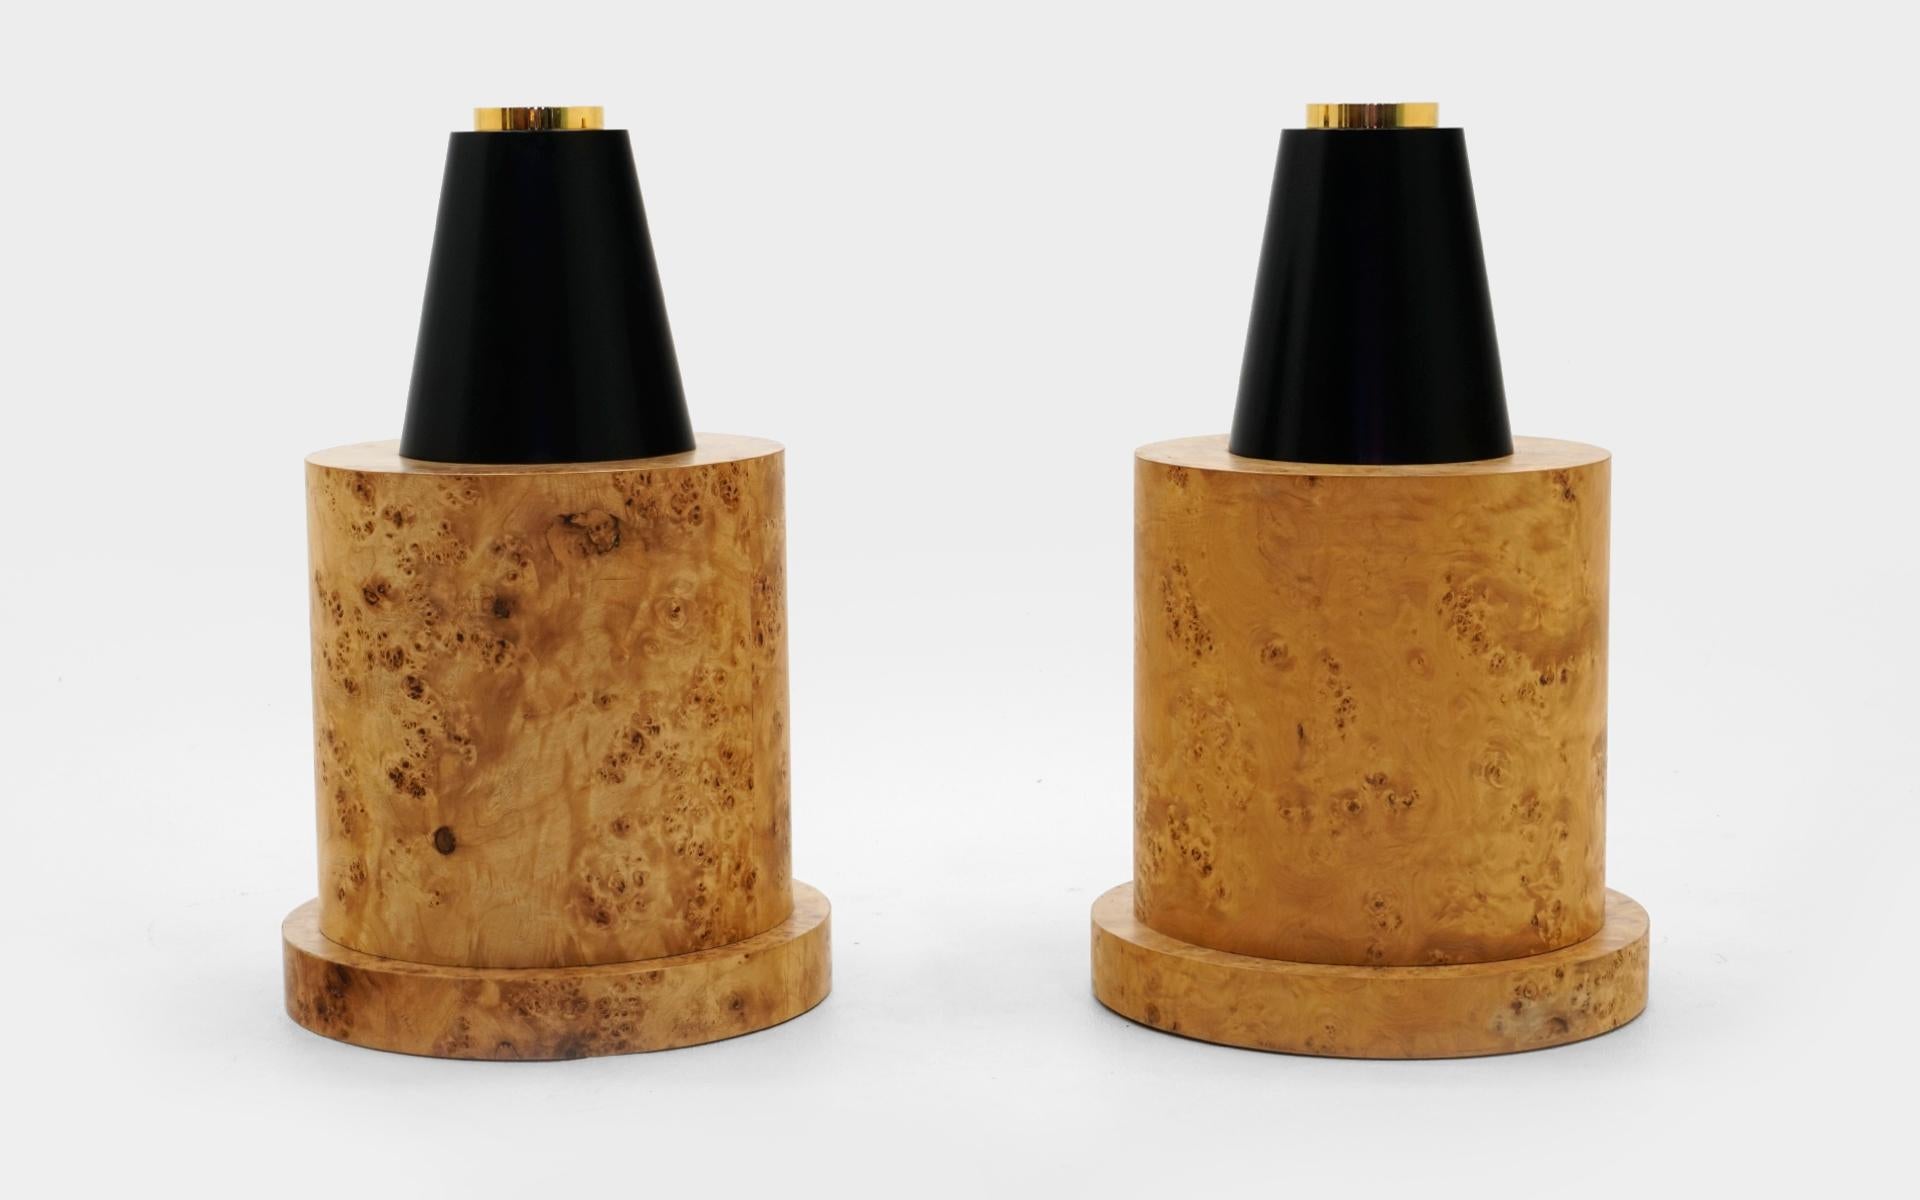 Deux grands vases en bois de ronce, noir et laiton conçus par Ettore Sottsass pour sa série 